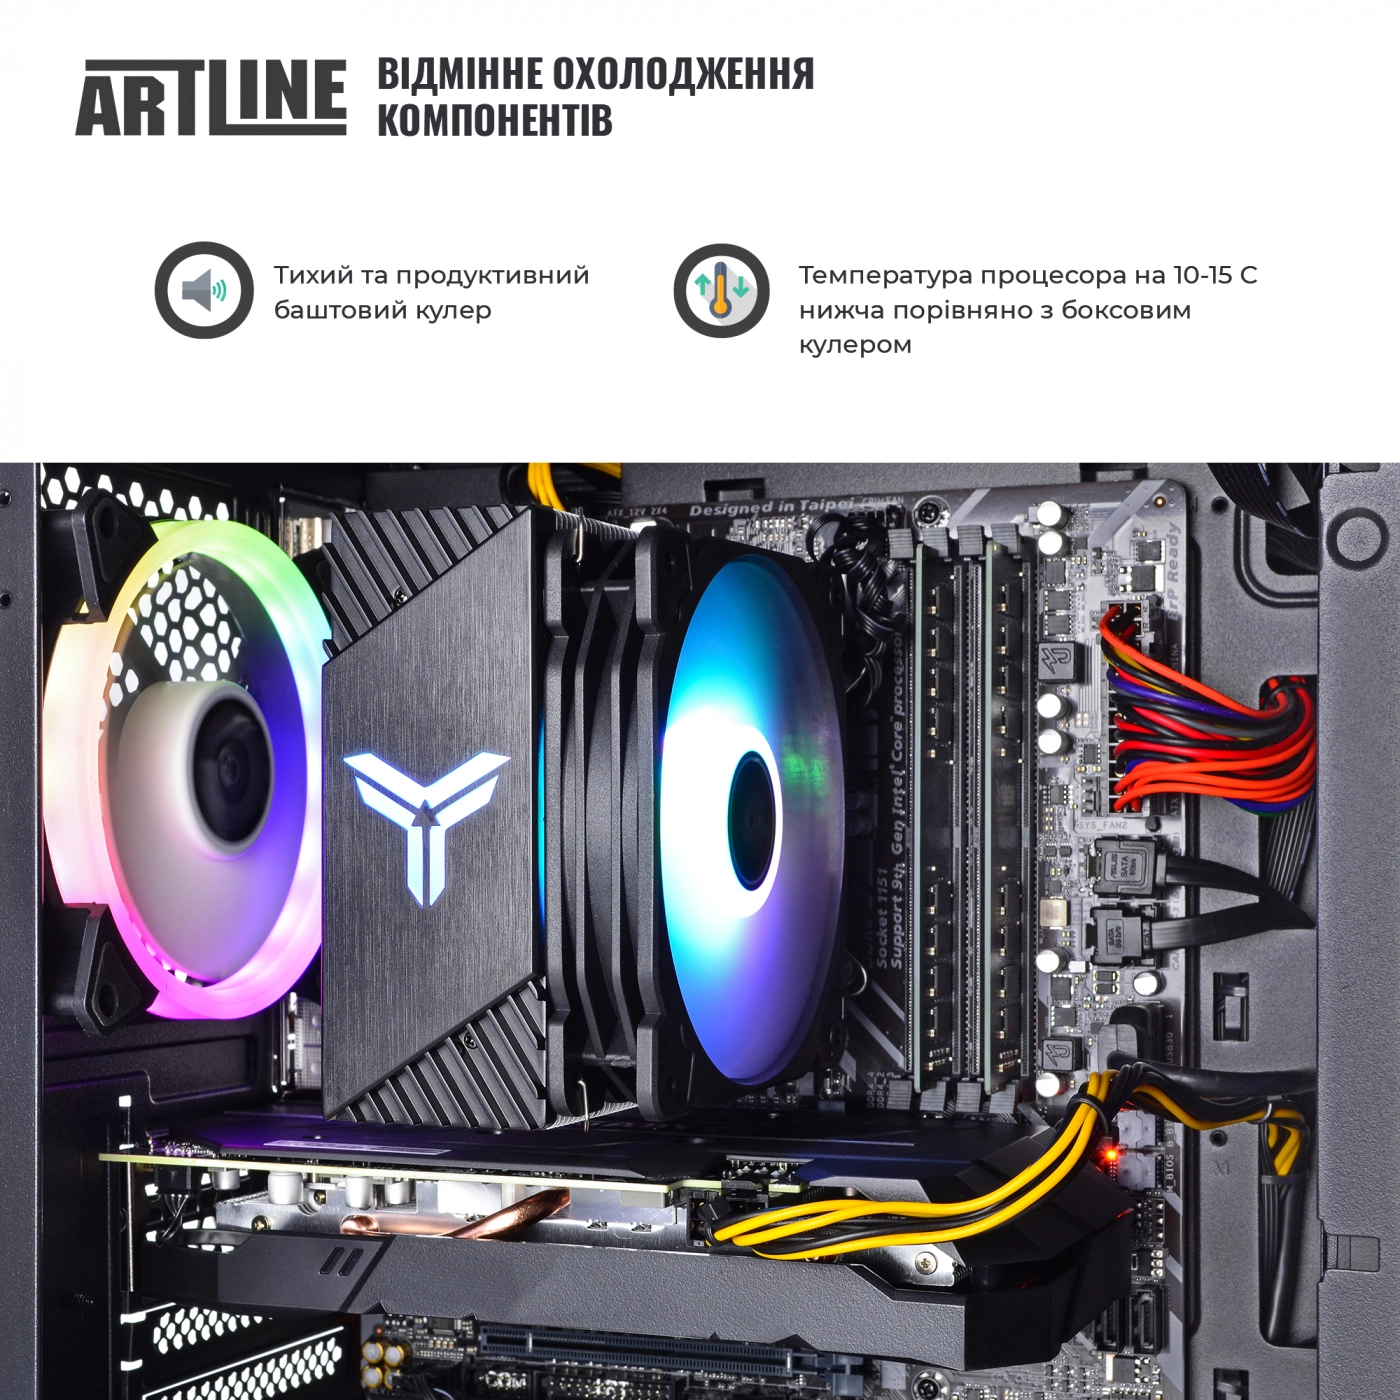 Купить Компьютер ARTLINE Gaming X71v45 - фото 4